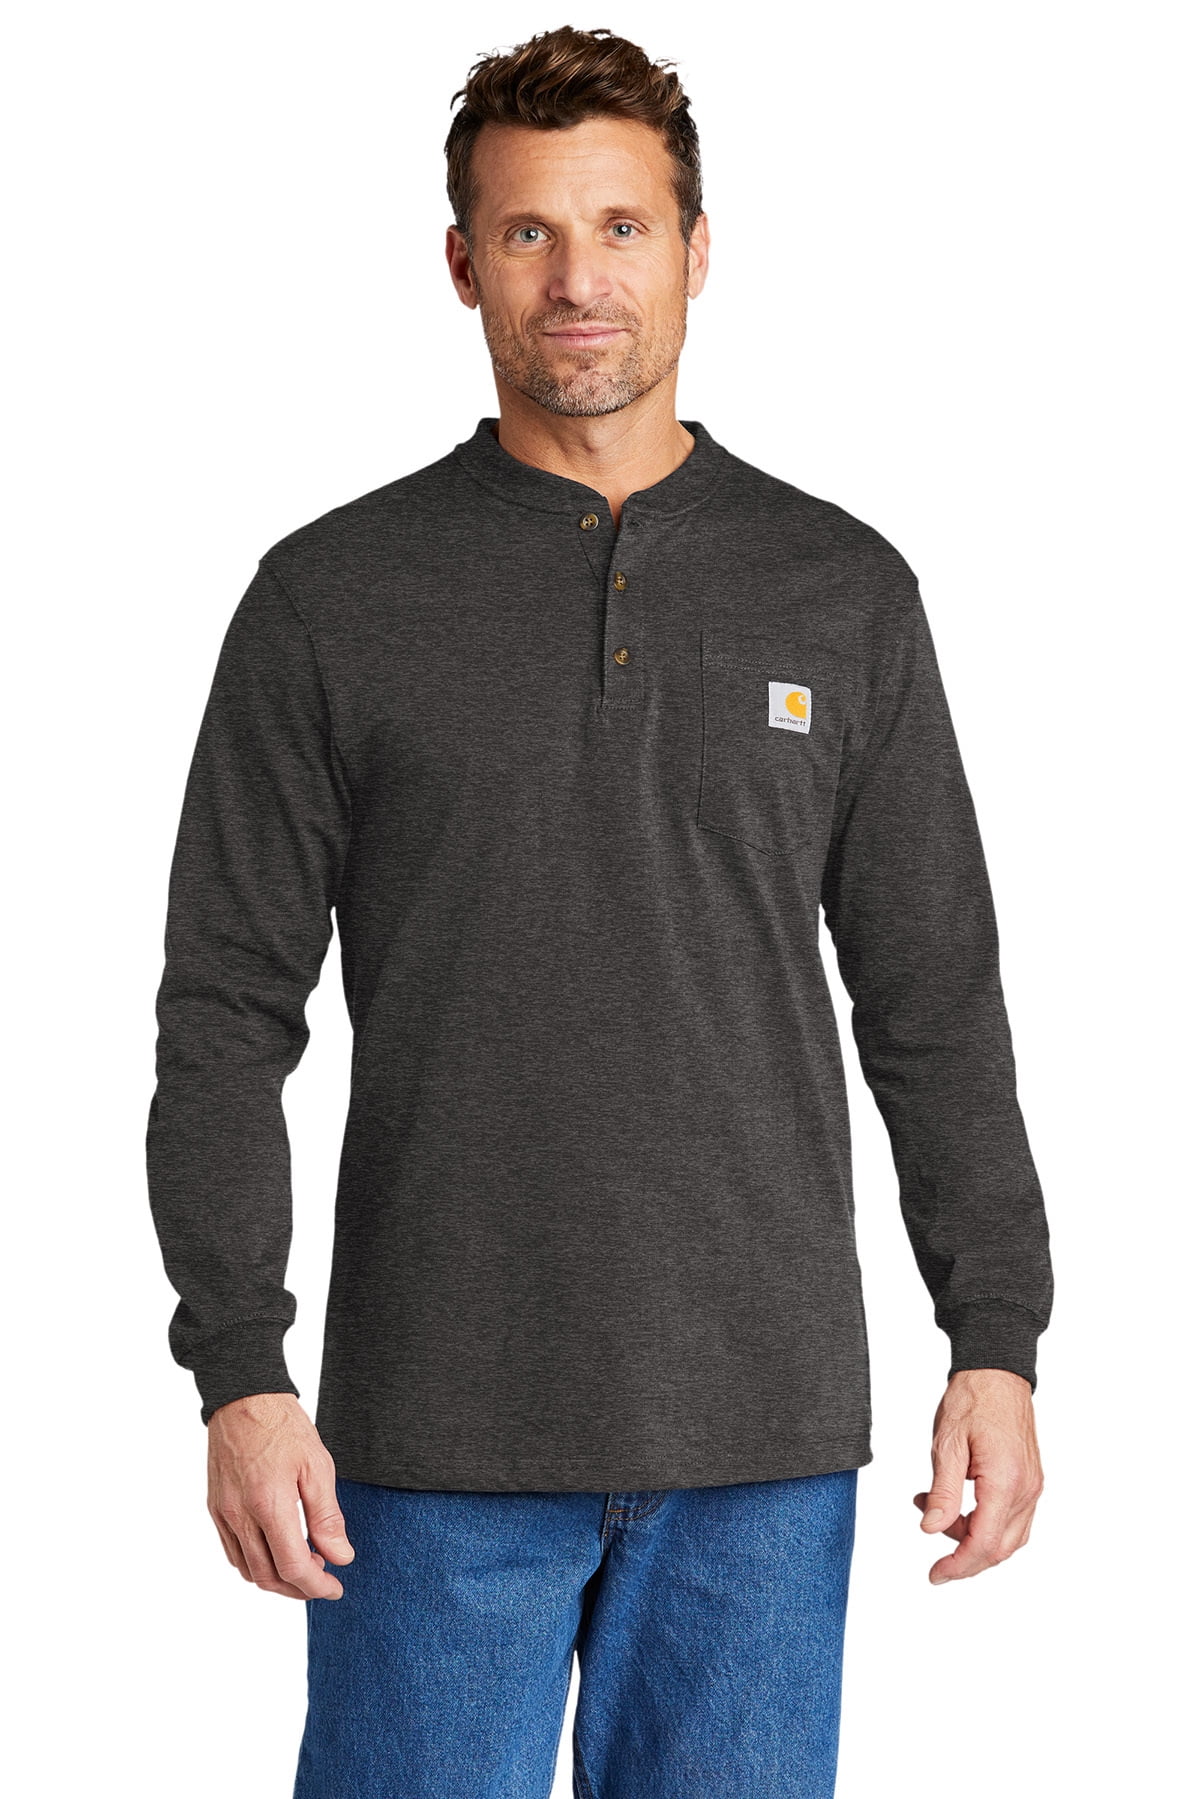 Carhartt Men's K128 Long Sleeve Henley Buttoned T-Shirt - Walmart.com